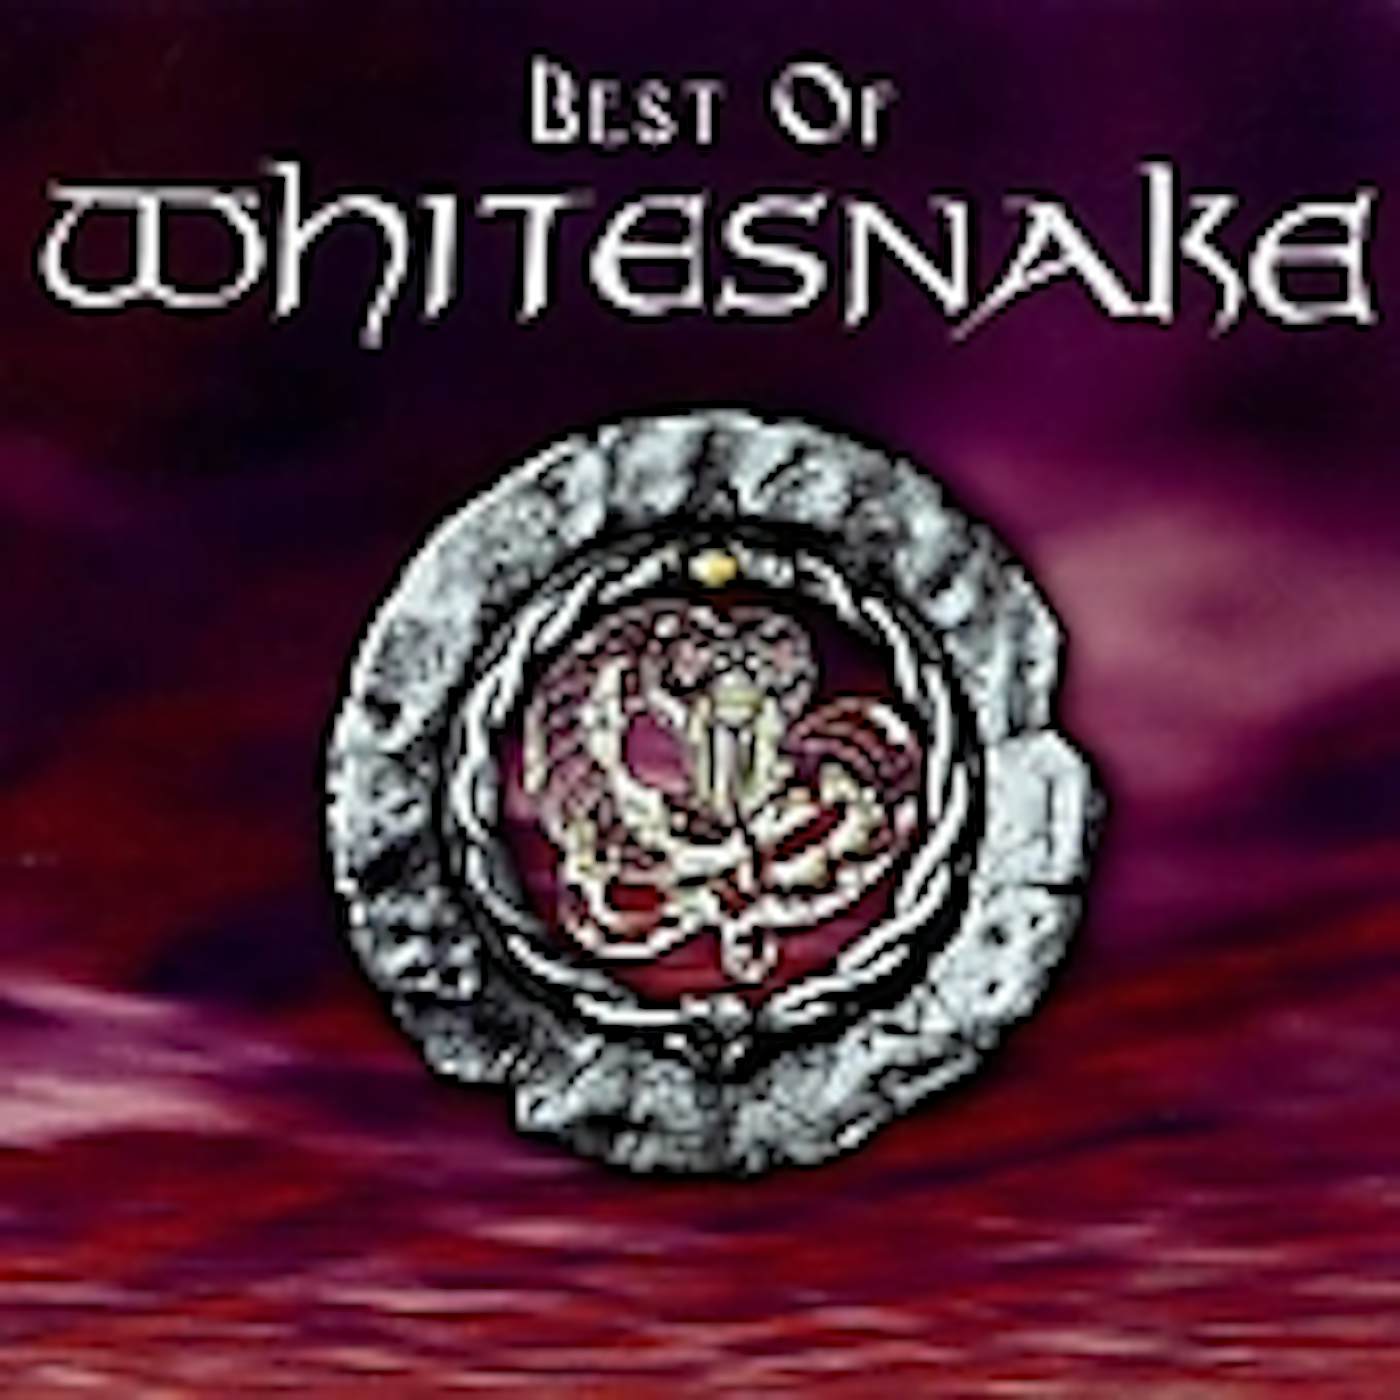 Whitesnake BEST OF CD